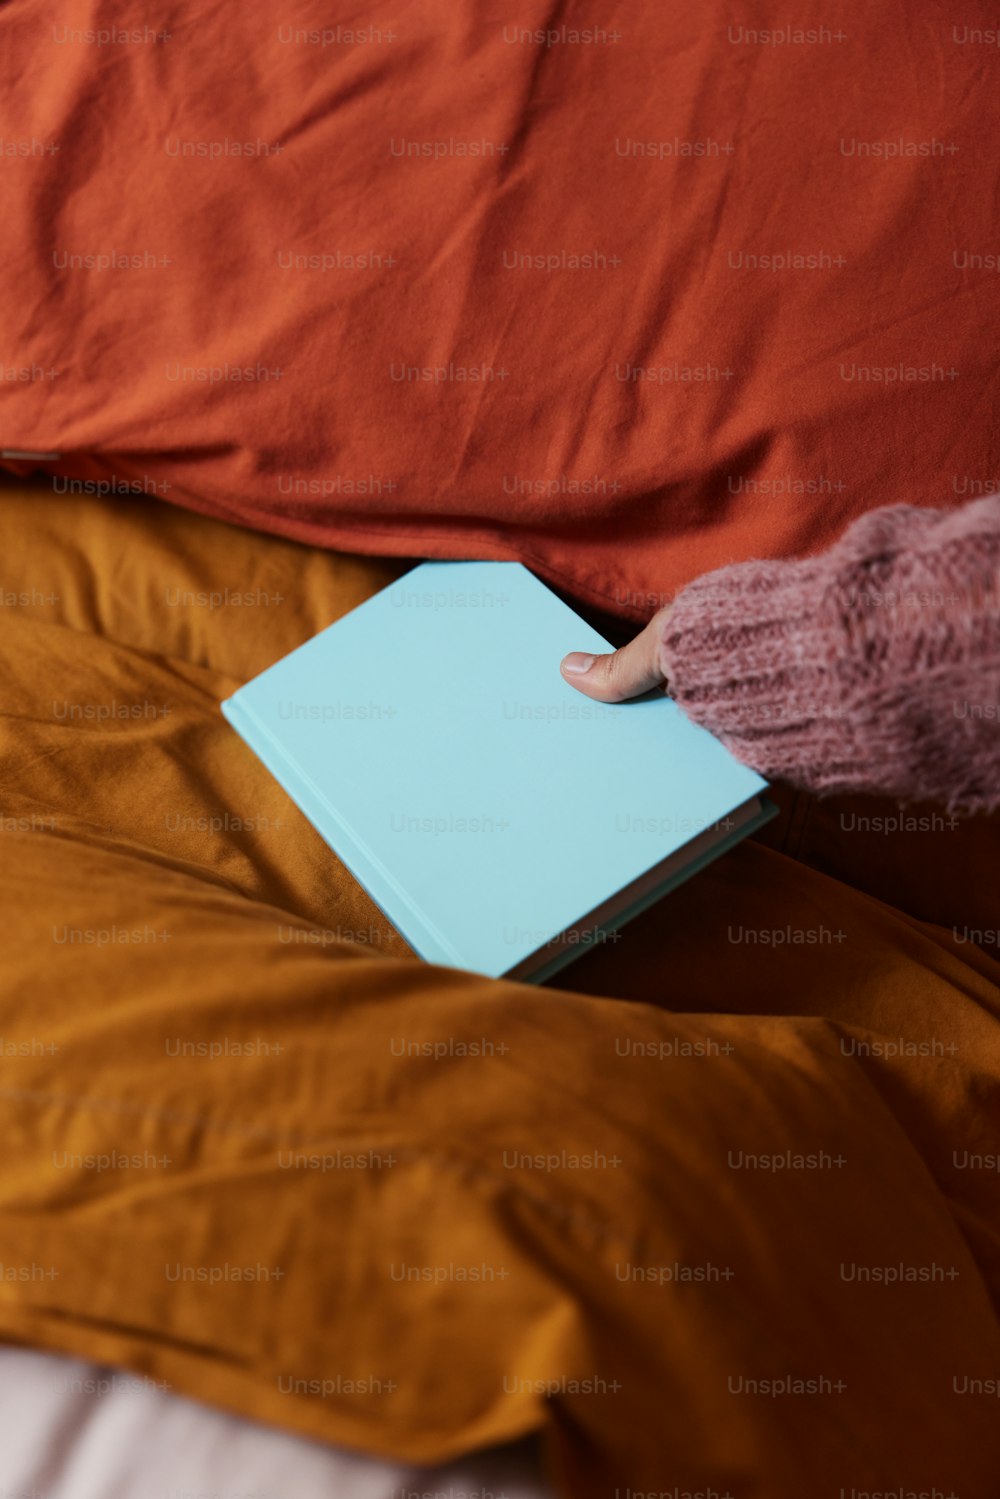 eine Person, die ein Buch auf einem Bett hält